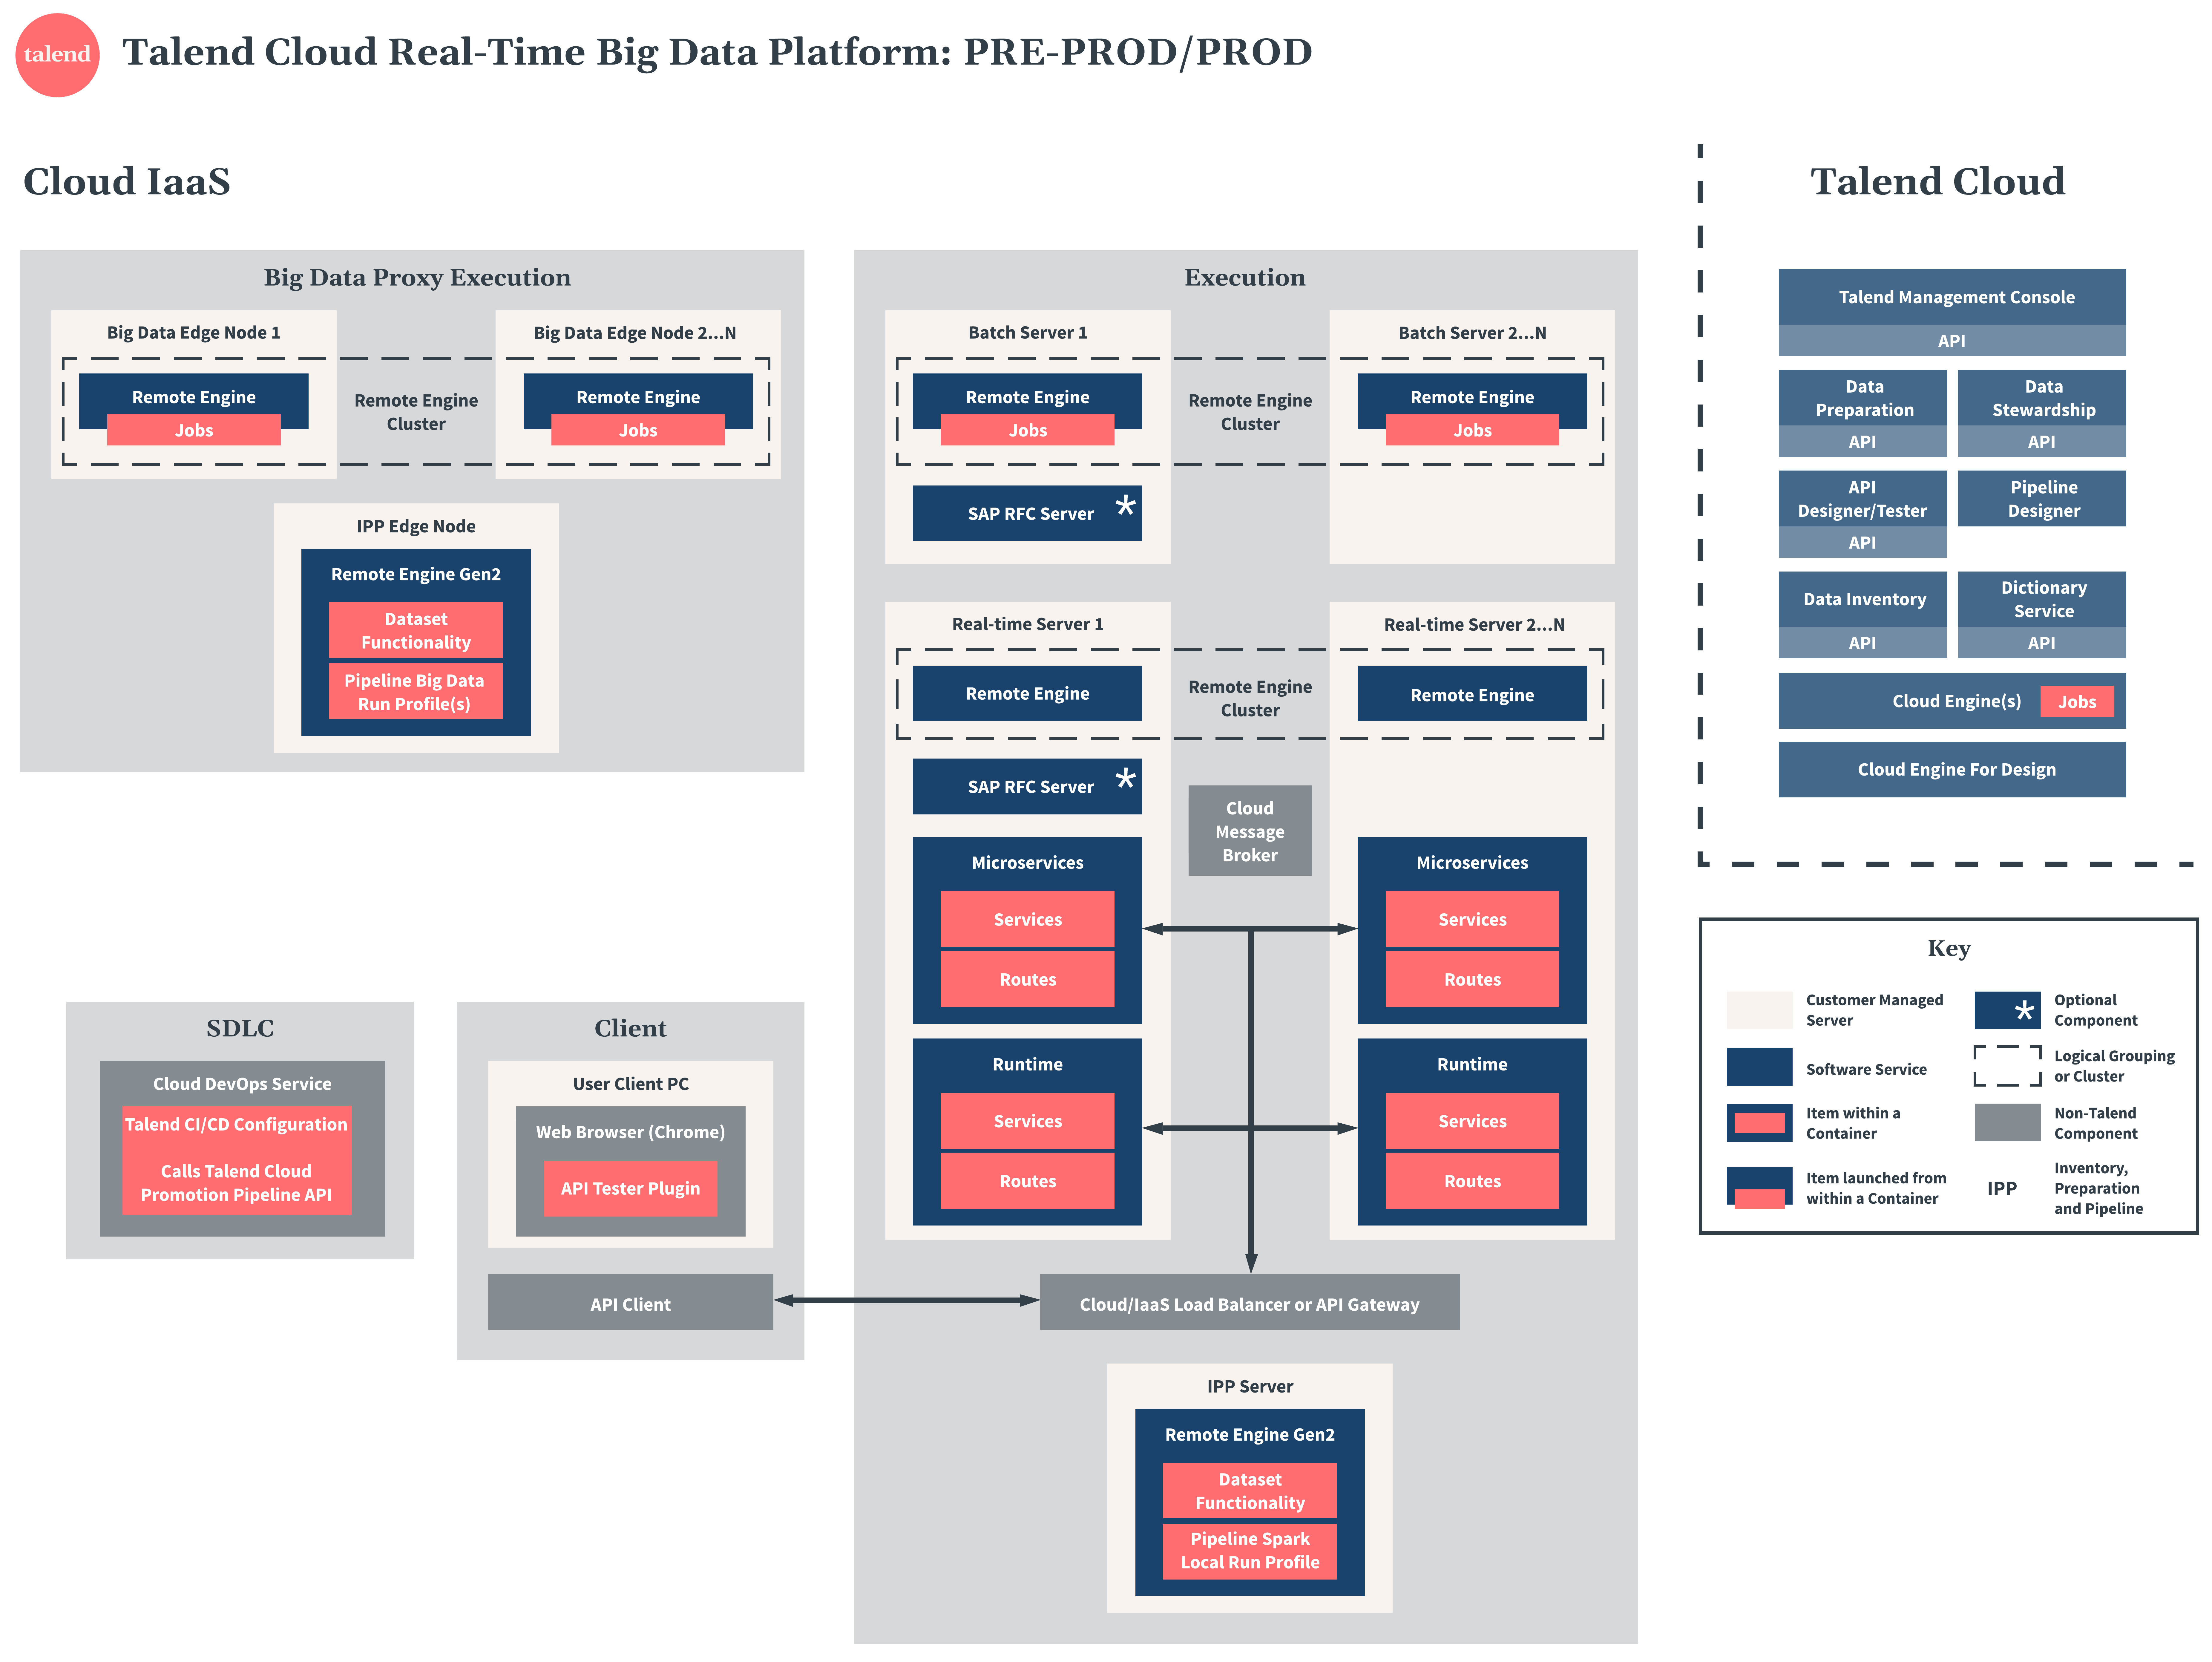 Diagramme de préproduction et production de Talend Cloud Real-Time Big Data Platform.